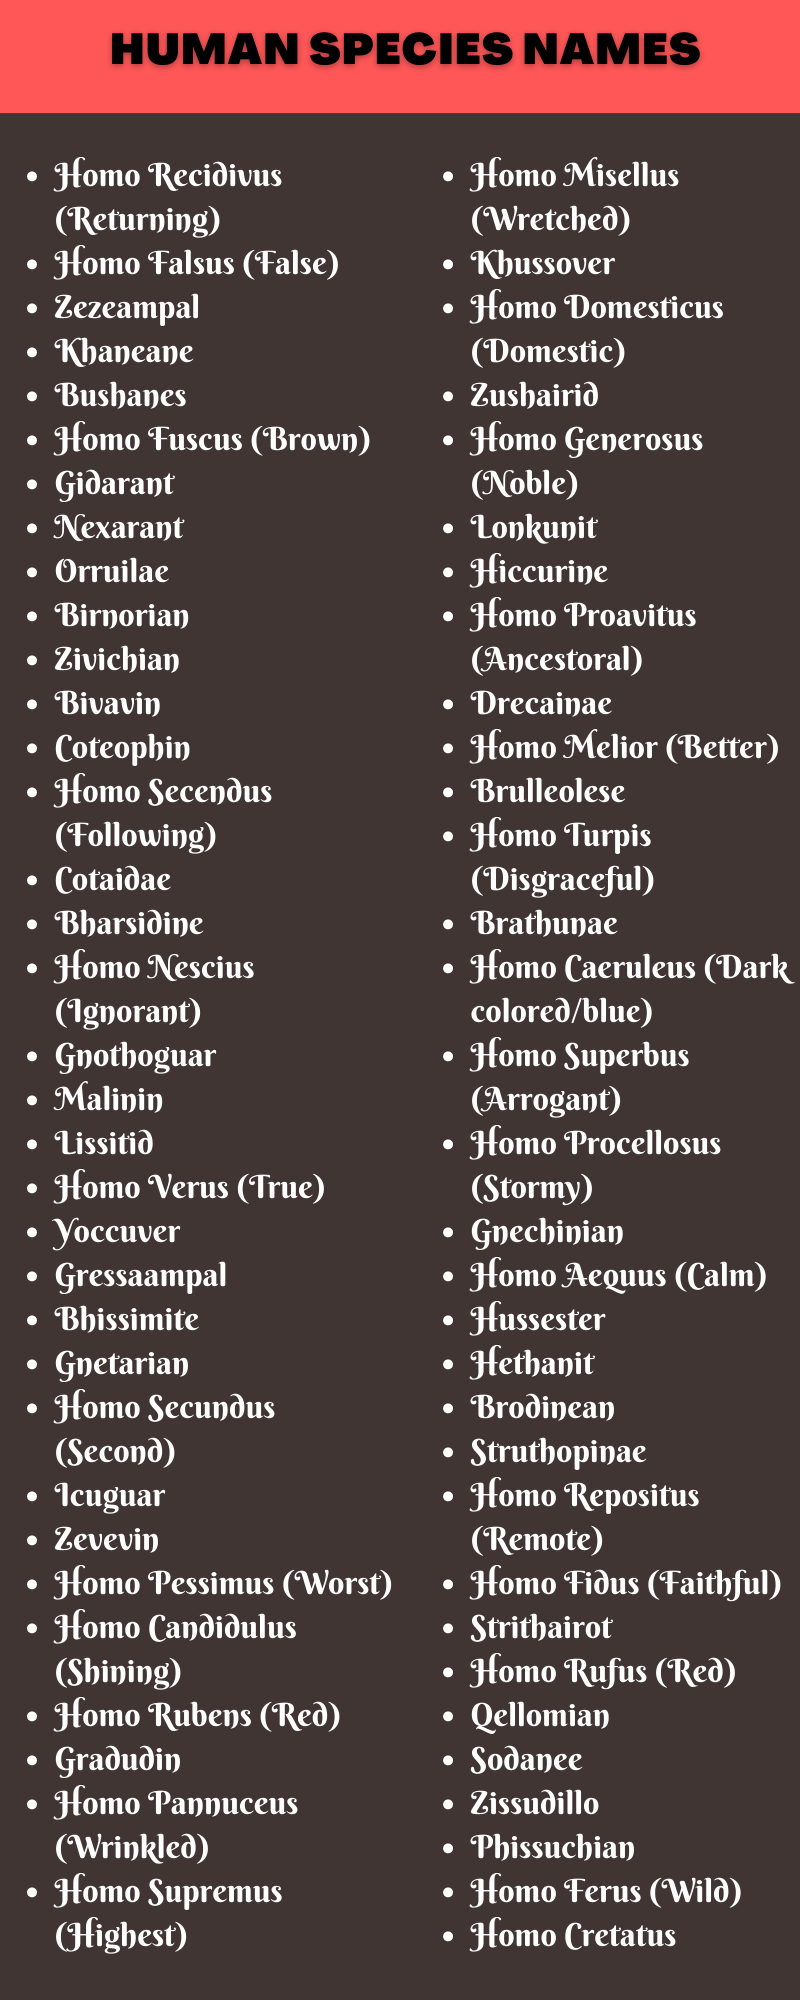 Human Species Names